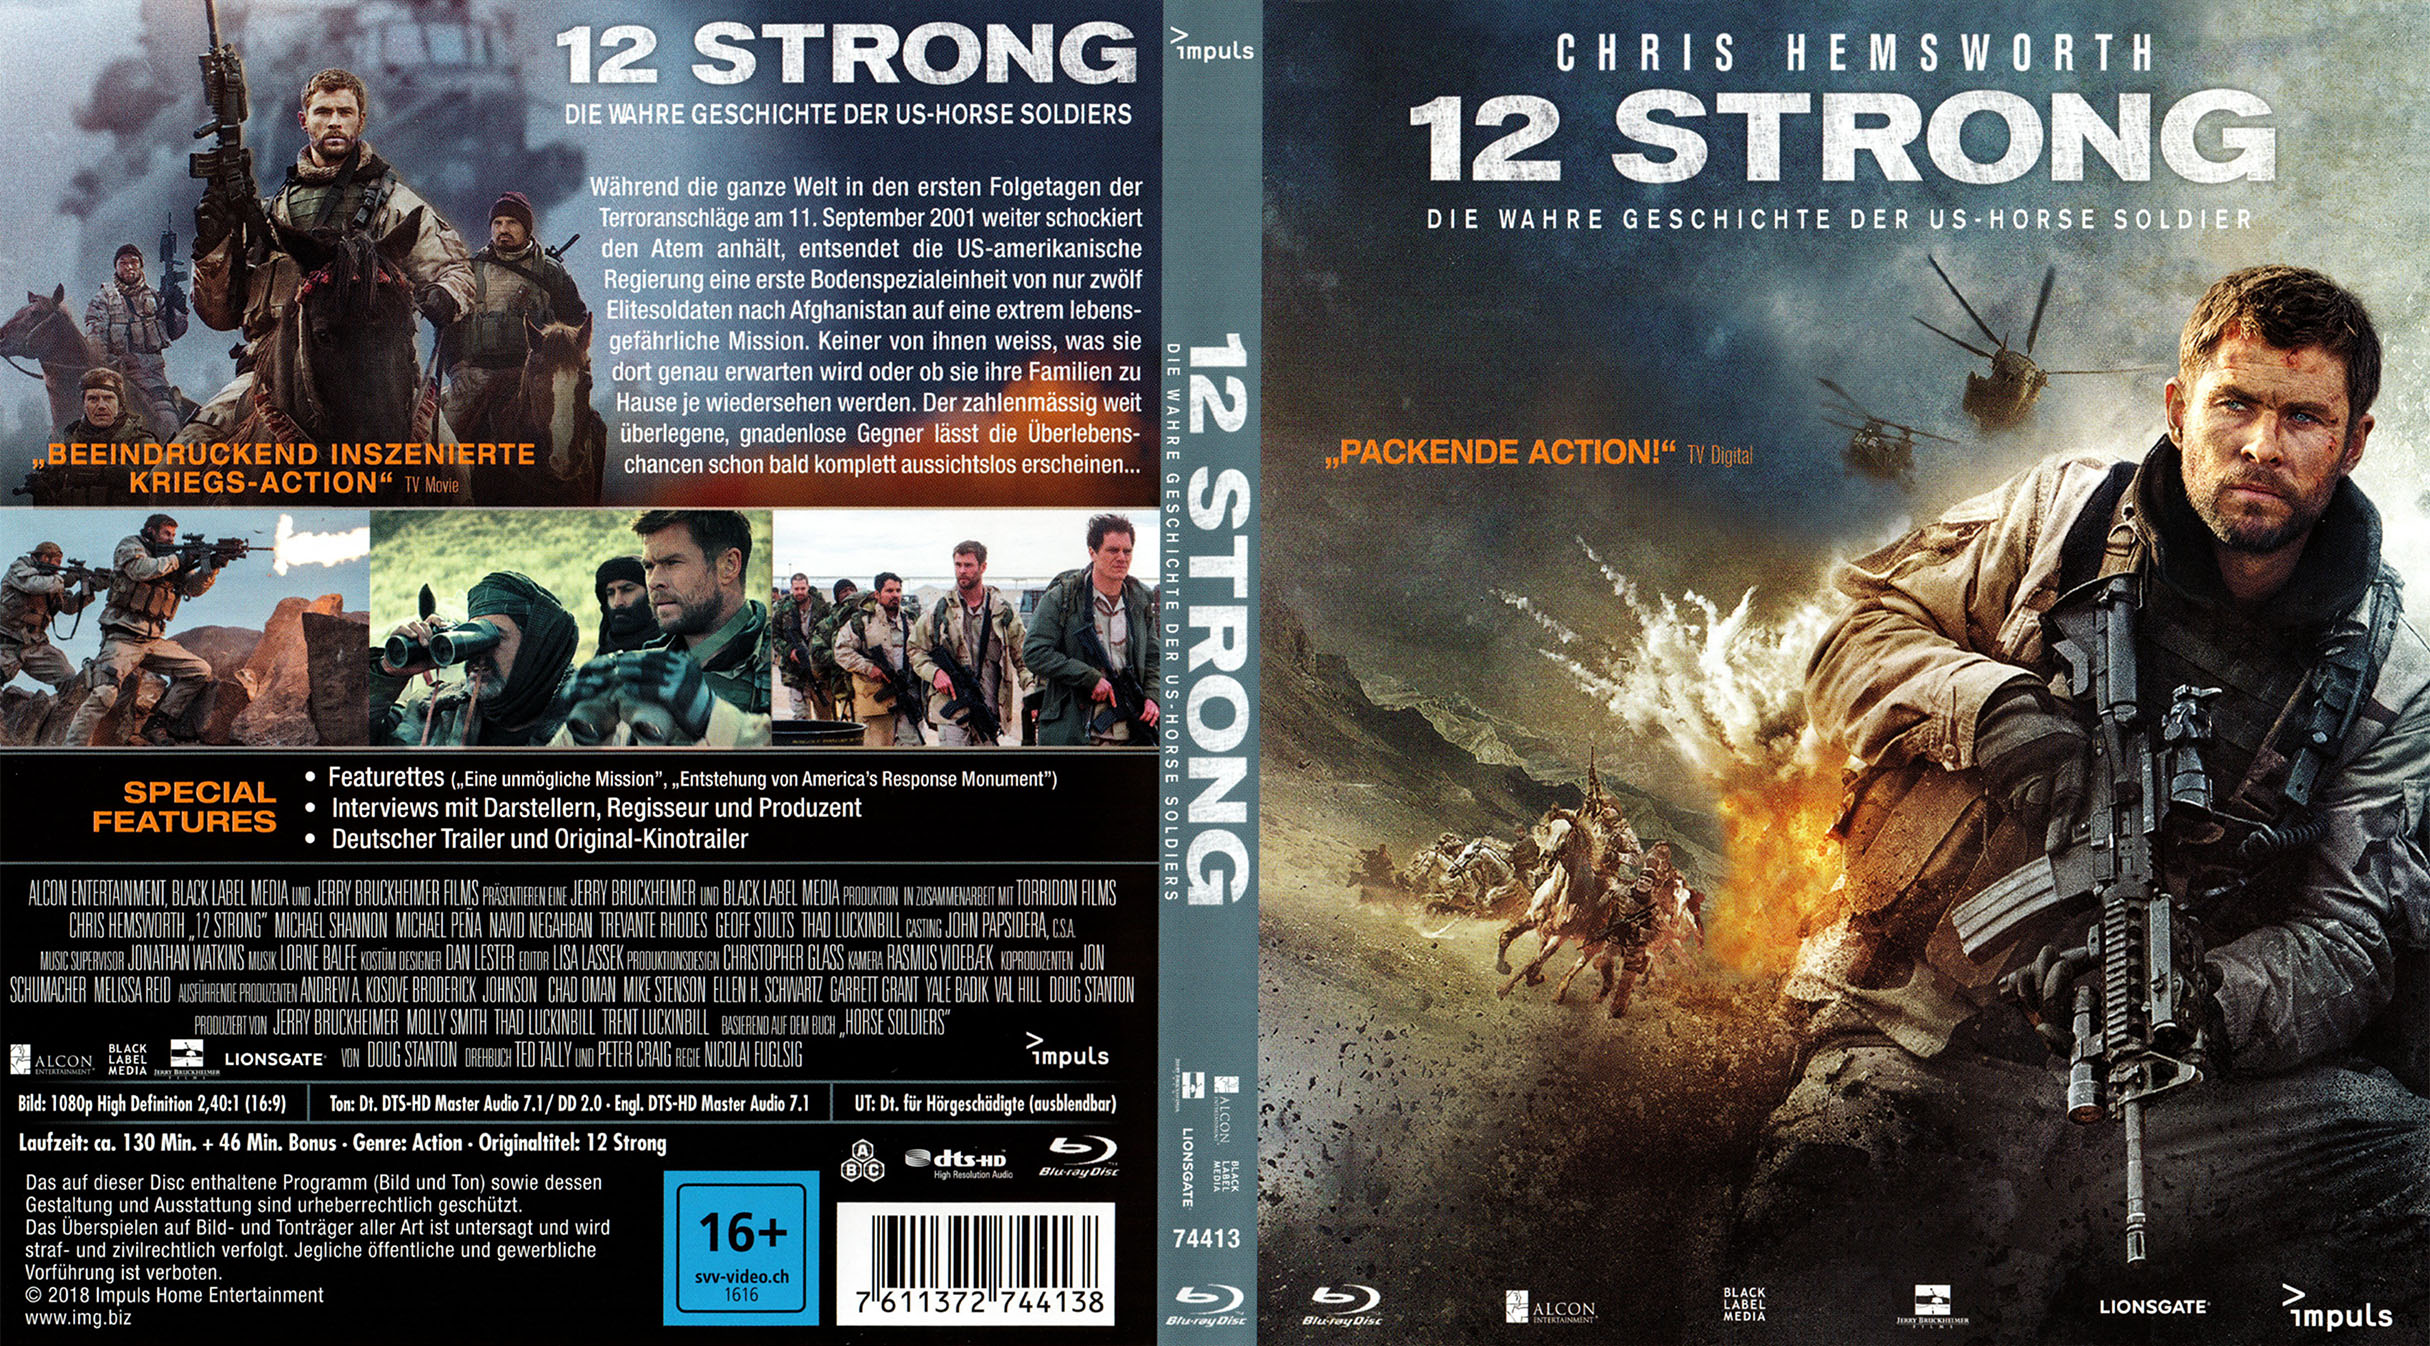 Stronger cover. Освобождение Blu ray обложка. Механик Cover Blu ray. Схватка Cover Blu ray. Cover Blu ray чужая земля.